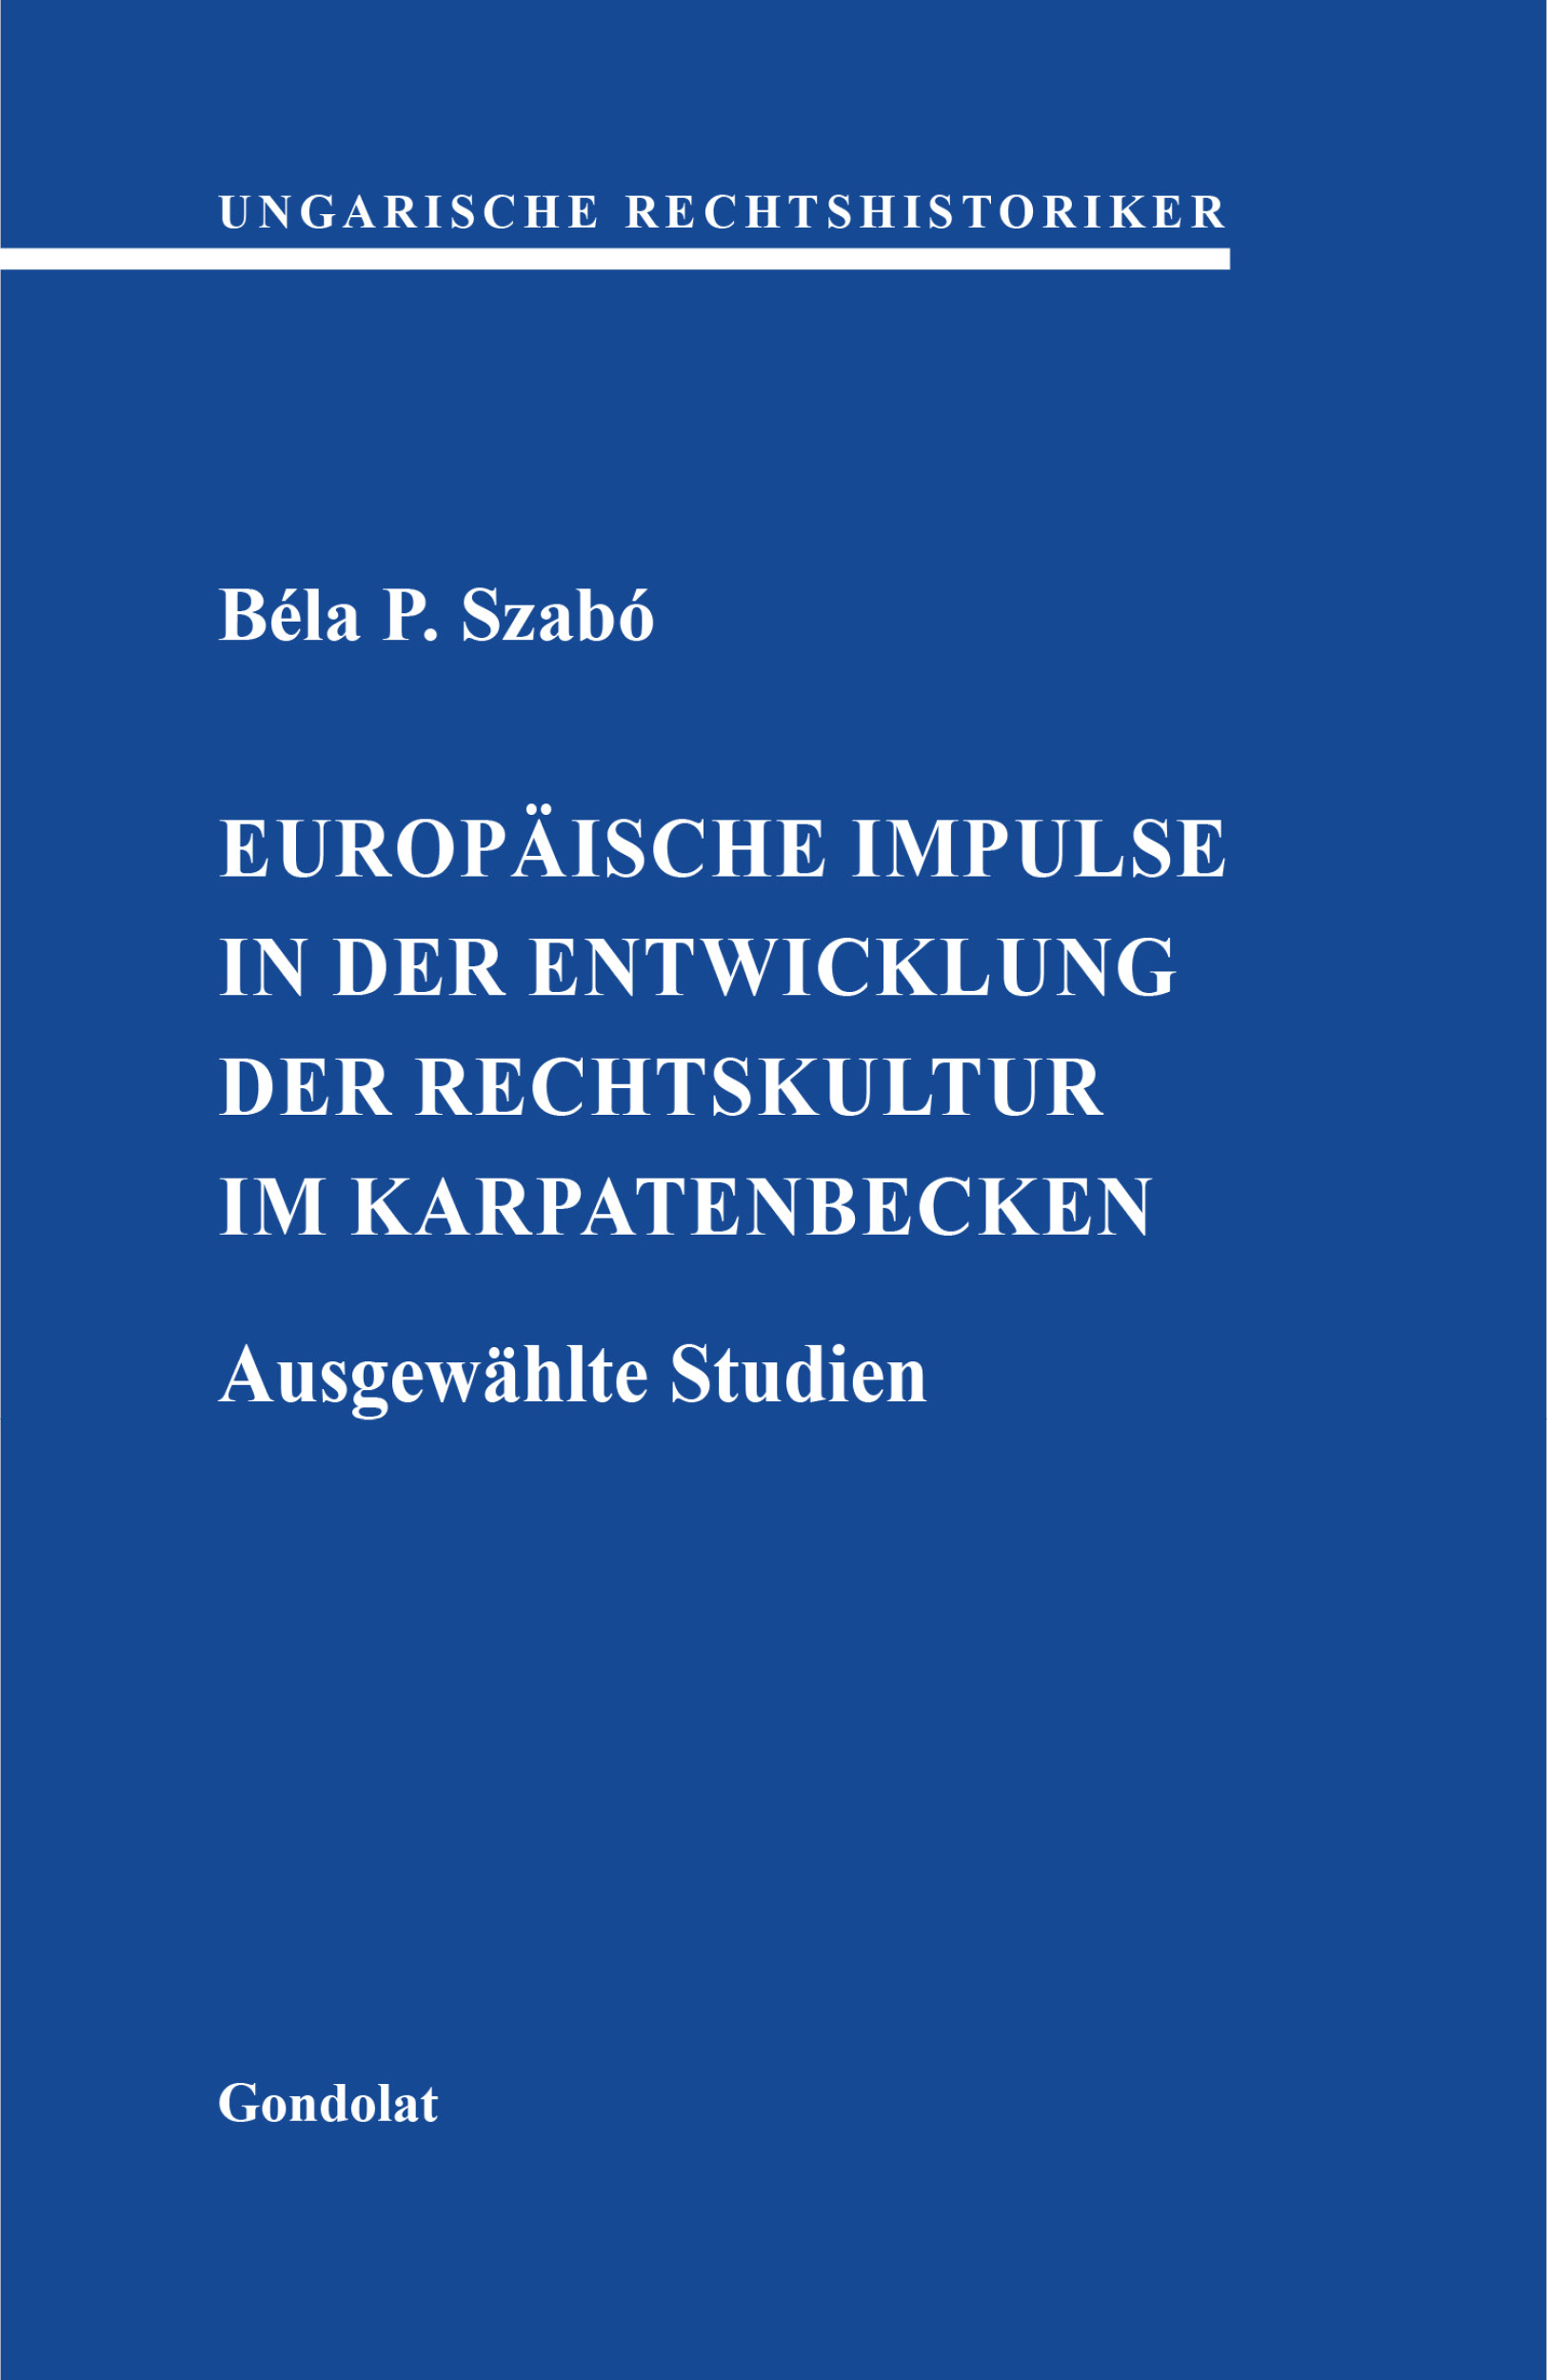 Europäische impulse in der entwicklung der rechtskultur im Karpatenbecken